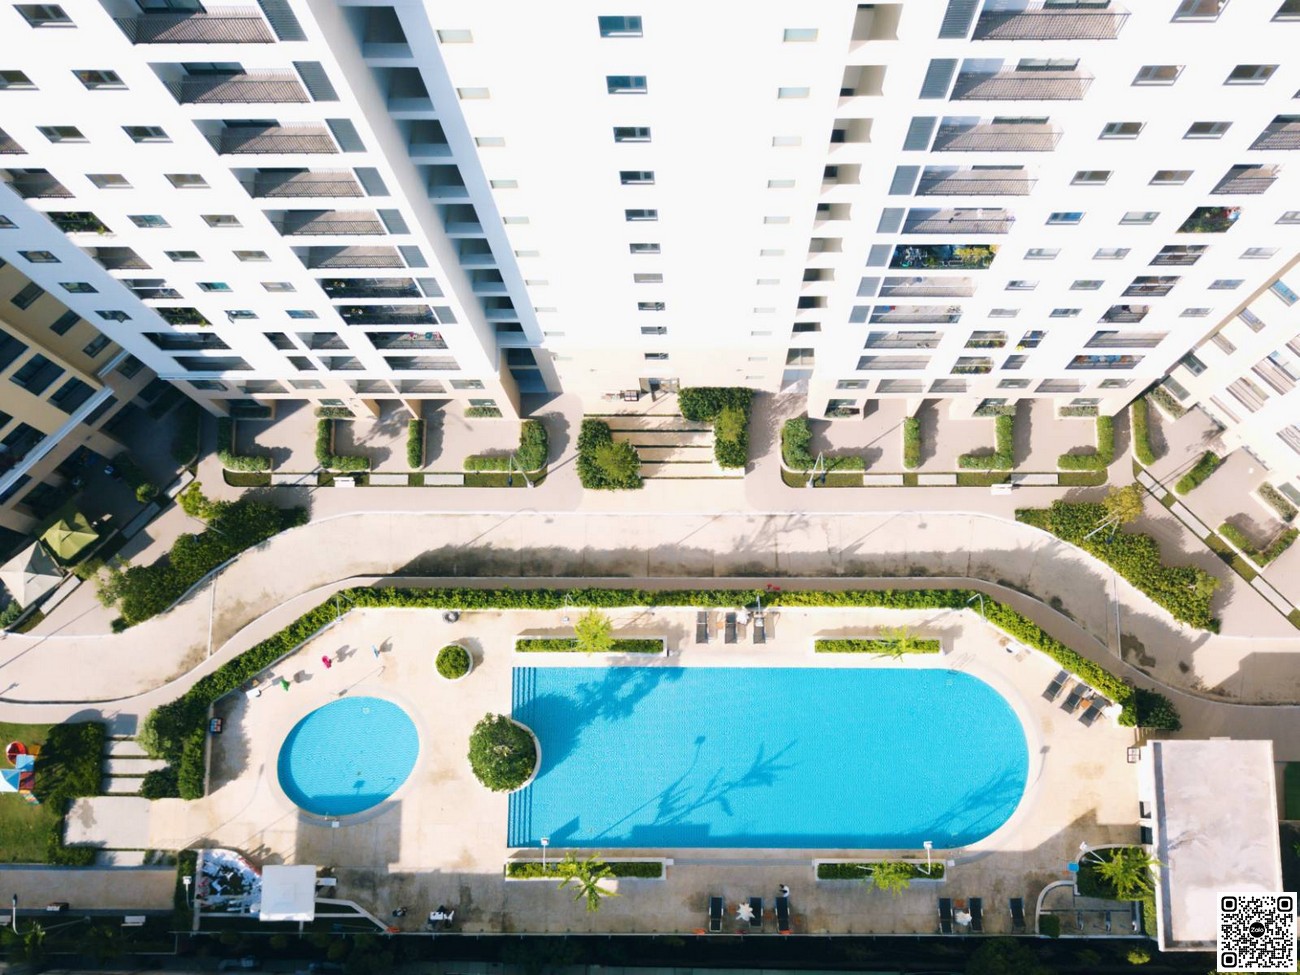 Tiện ích hồ bơi chuẩn tại dự án căn hộ chung cư Centum Wealth Thủ Đức.